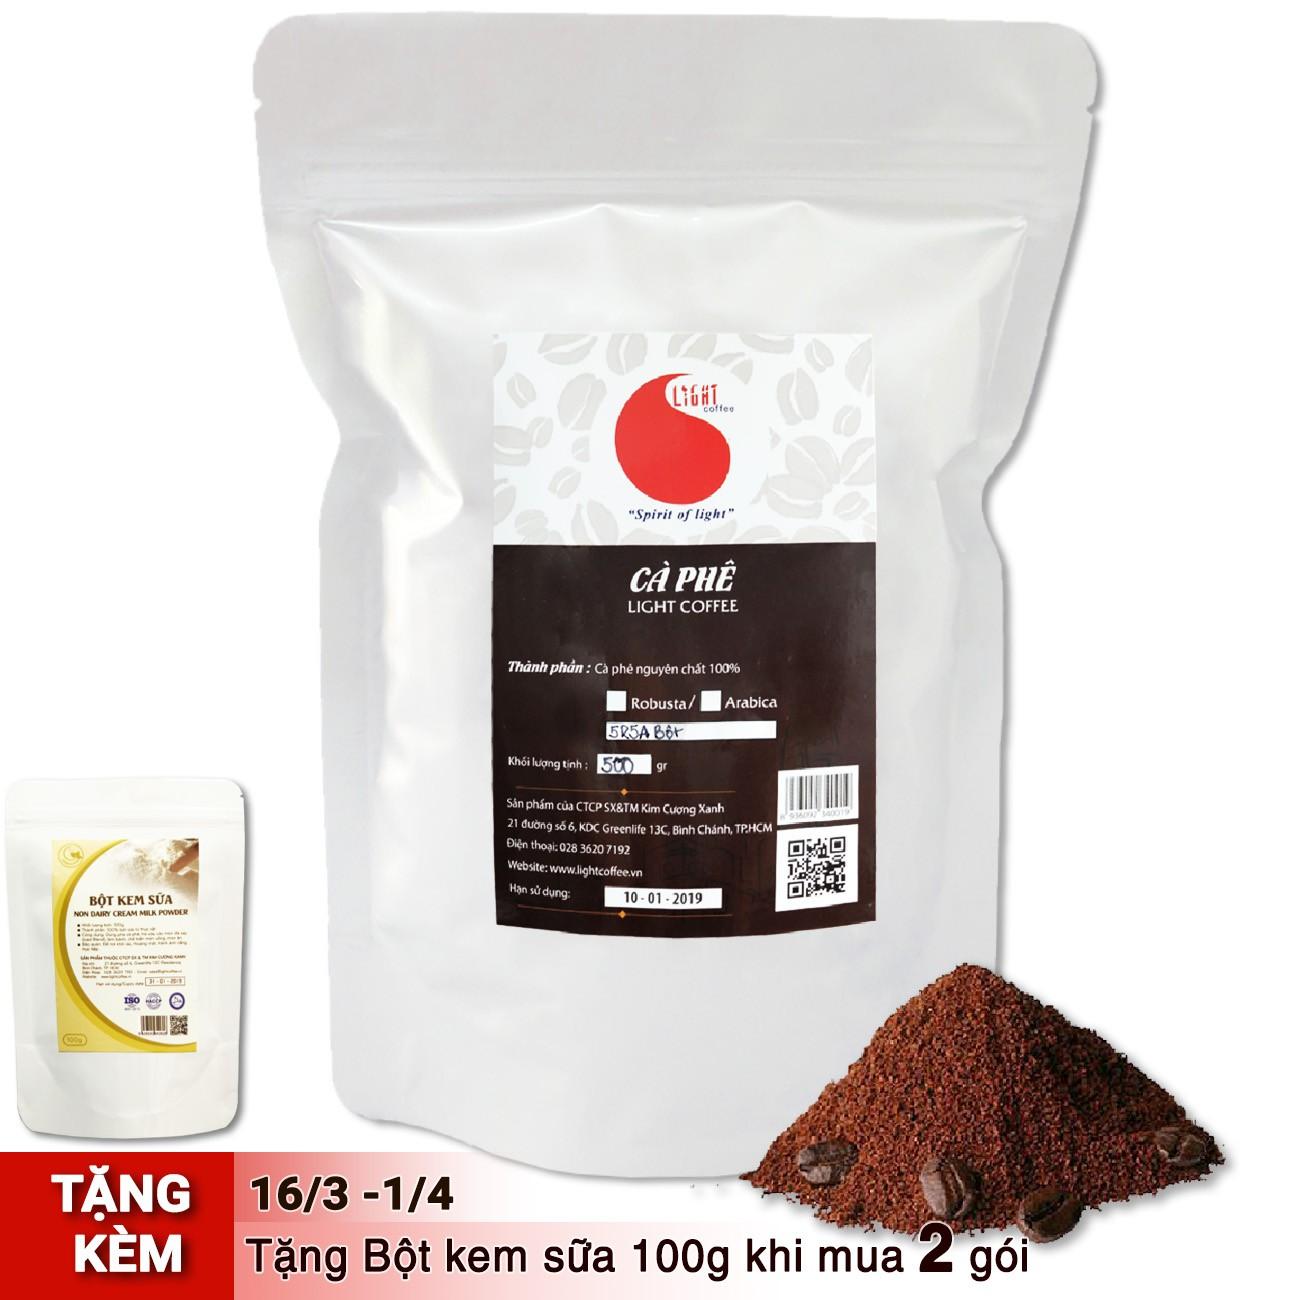 Cà phê bột nguyên chất 100% - Phối chuẩn - Light Coffee - 500gr